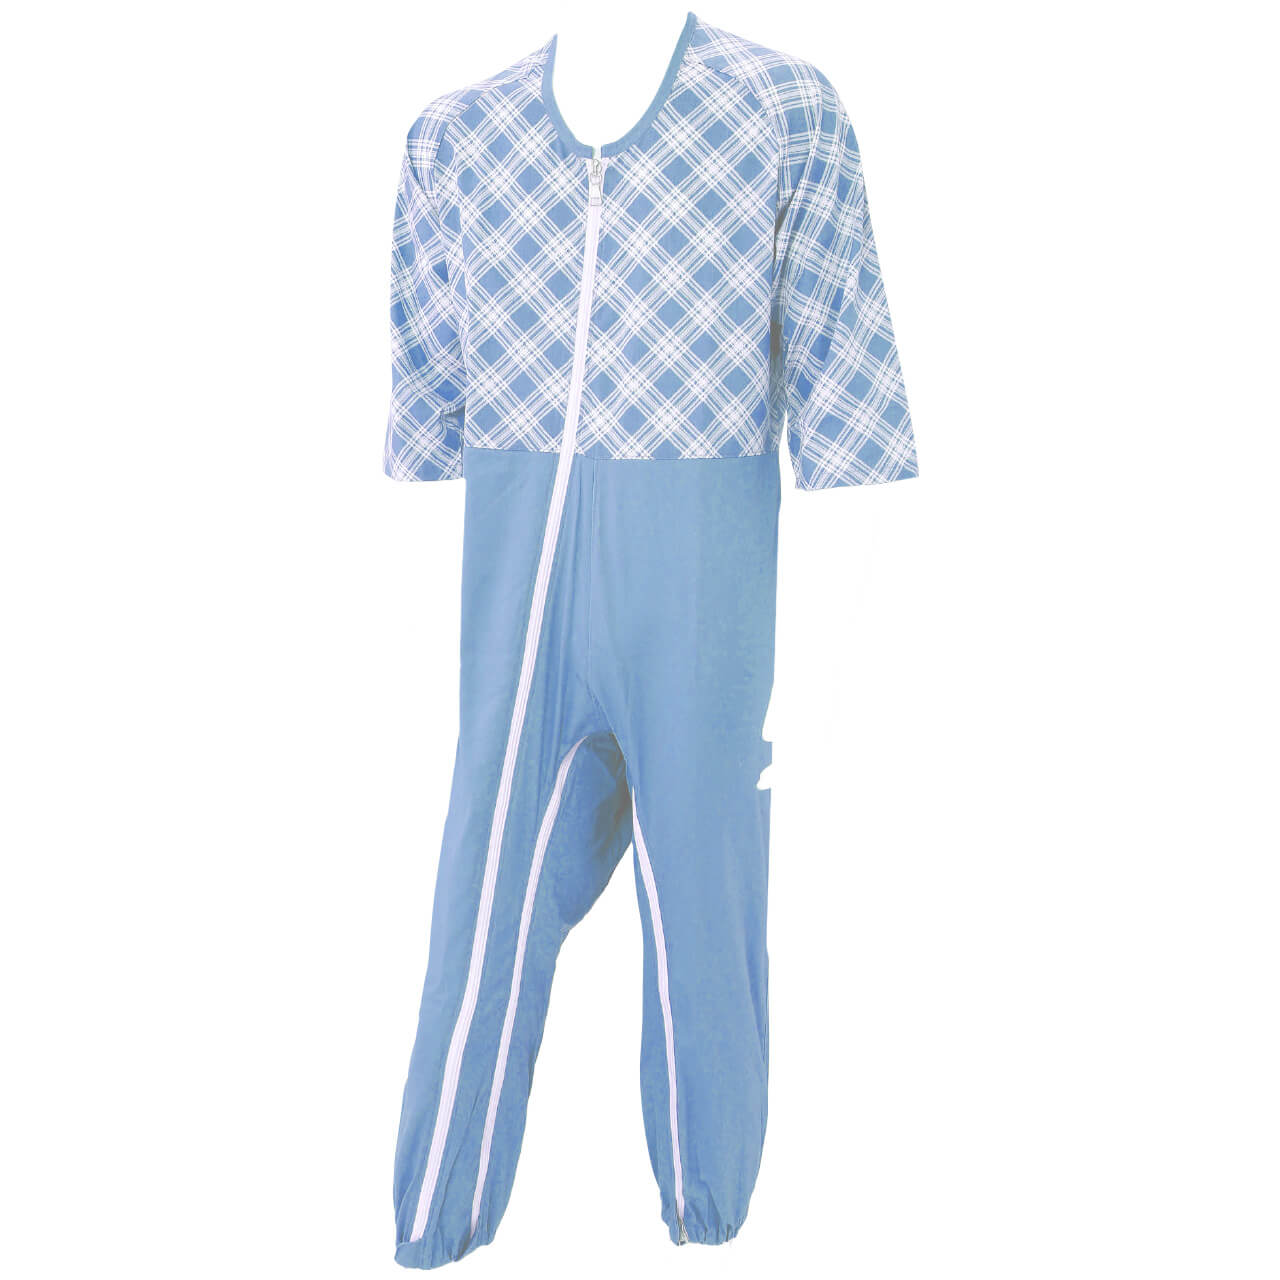 男女兼用 8分袖つなぎパジャマ フルオープン仕様 M～LL (介護パジャマ ファスナーロック式 着脱簡単)(送料無料) (取寄せ)